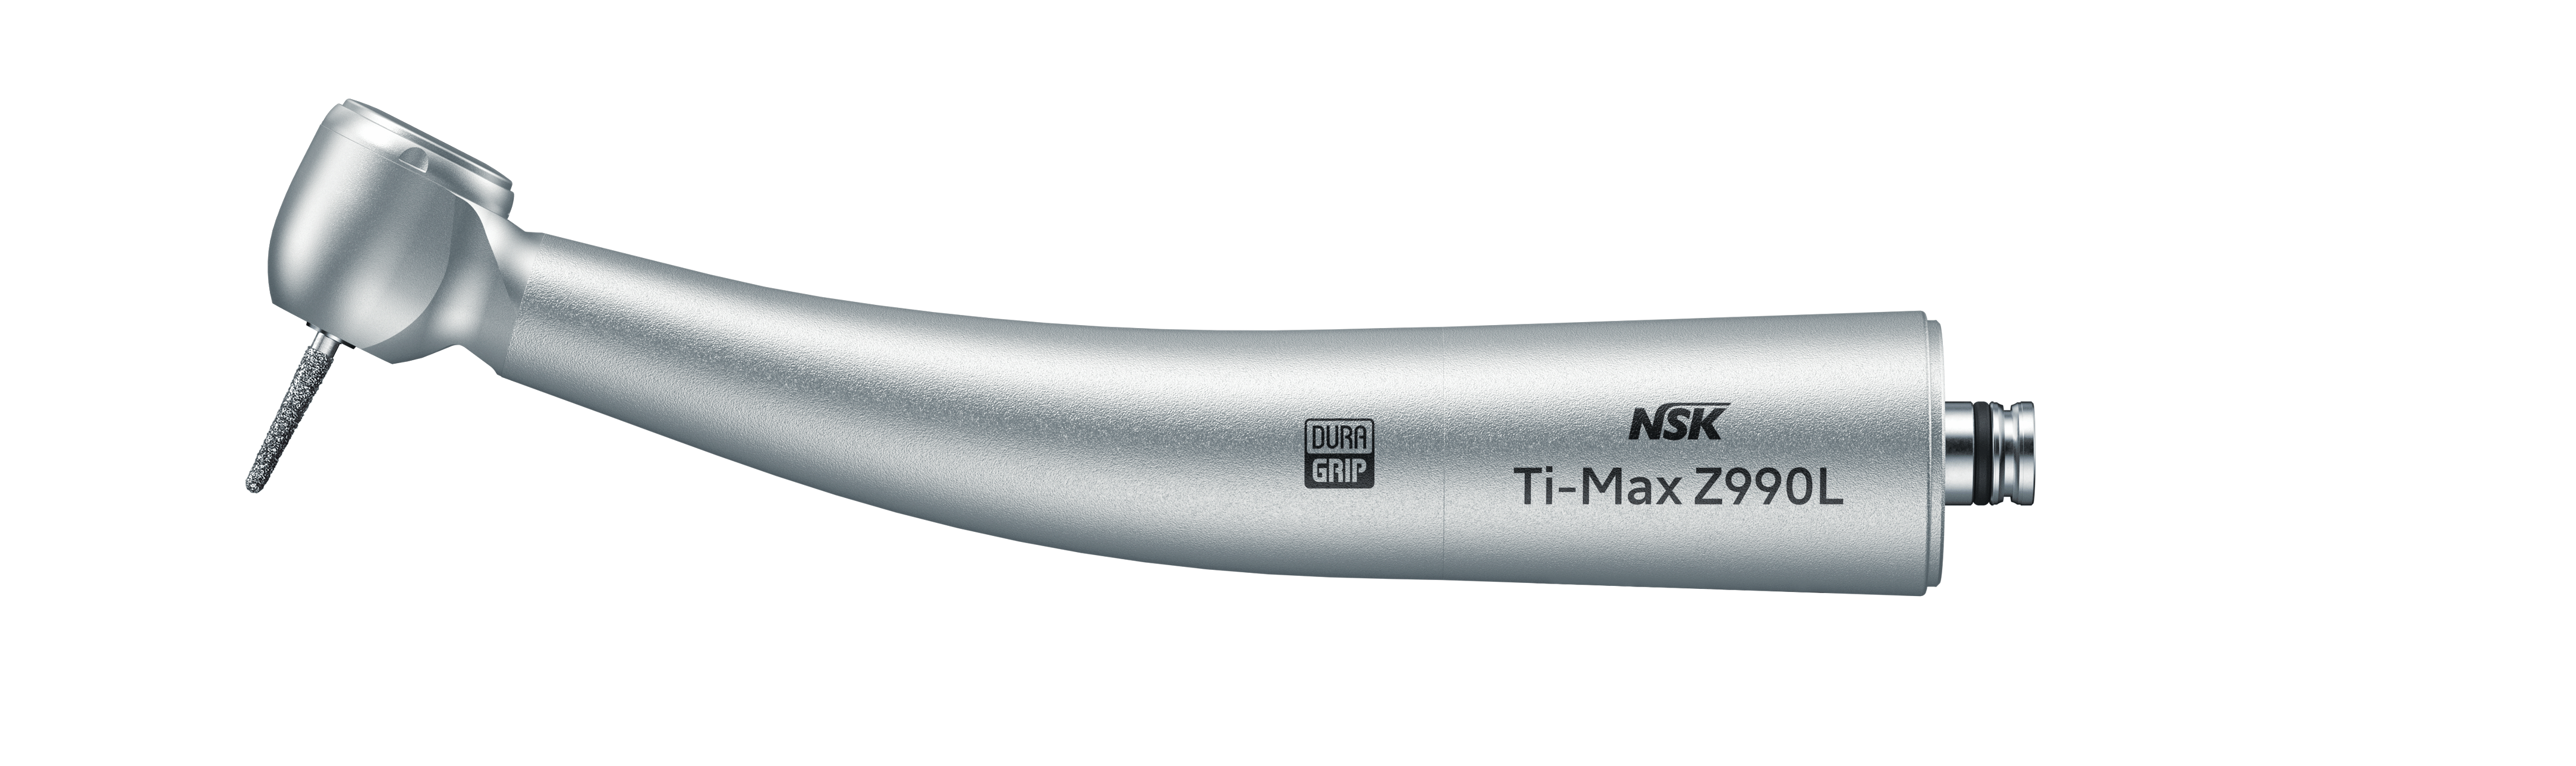 NSK Ti-Max Z990L, Lichtturbine, NEUHEIT - 44 Watt Leistung, 100°Kopf   